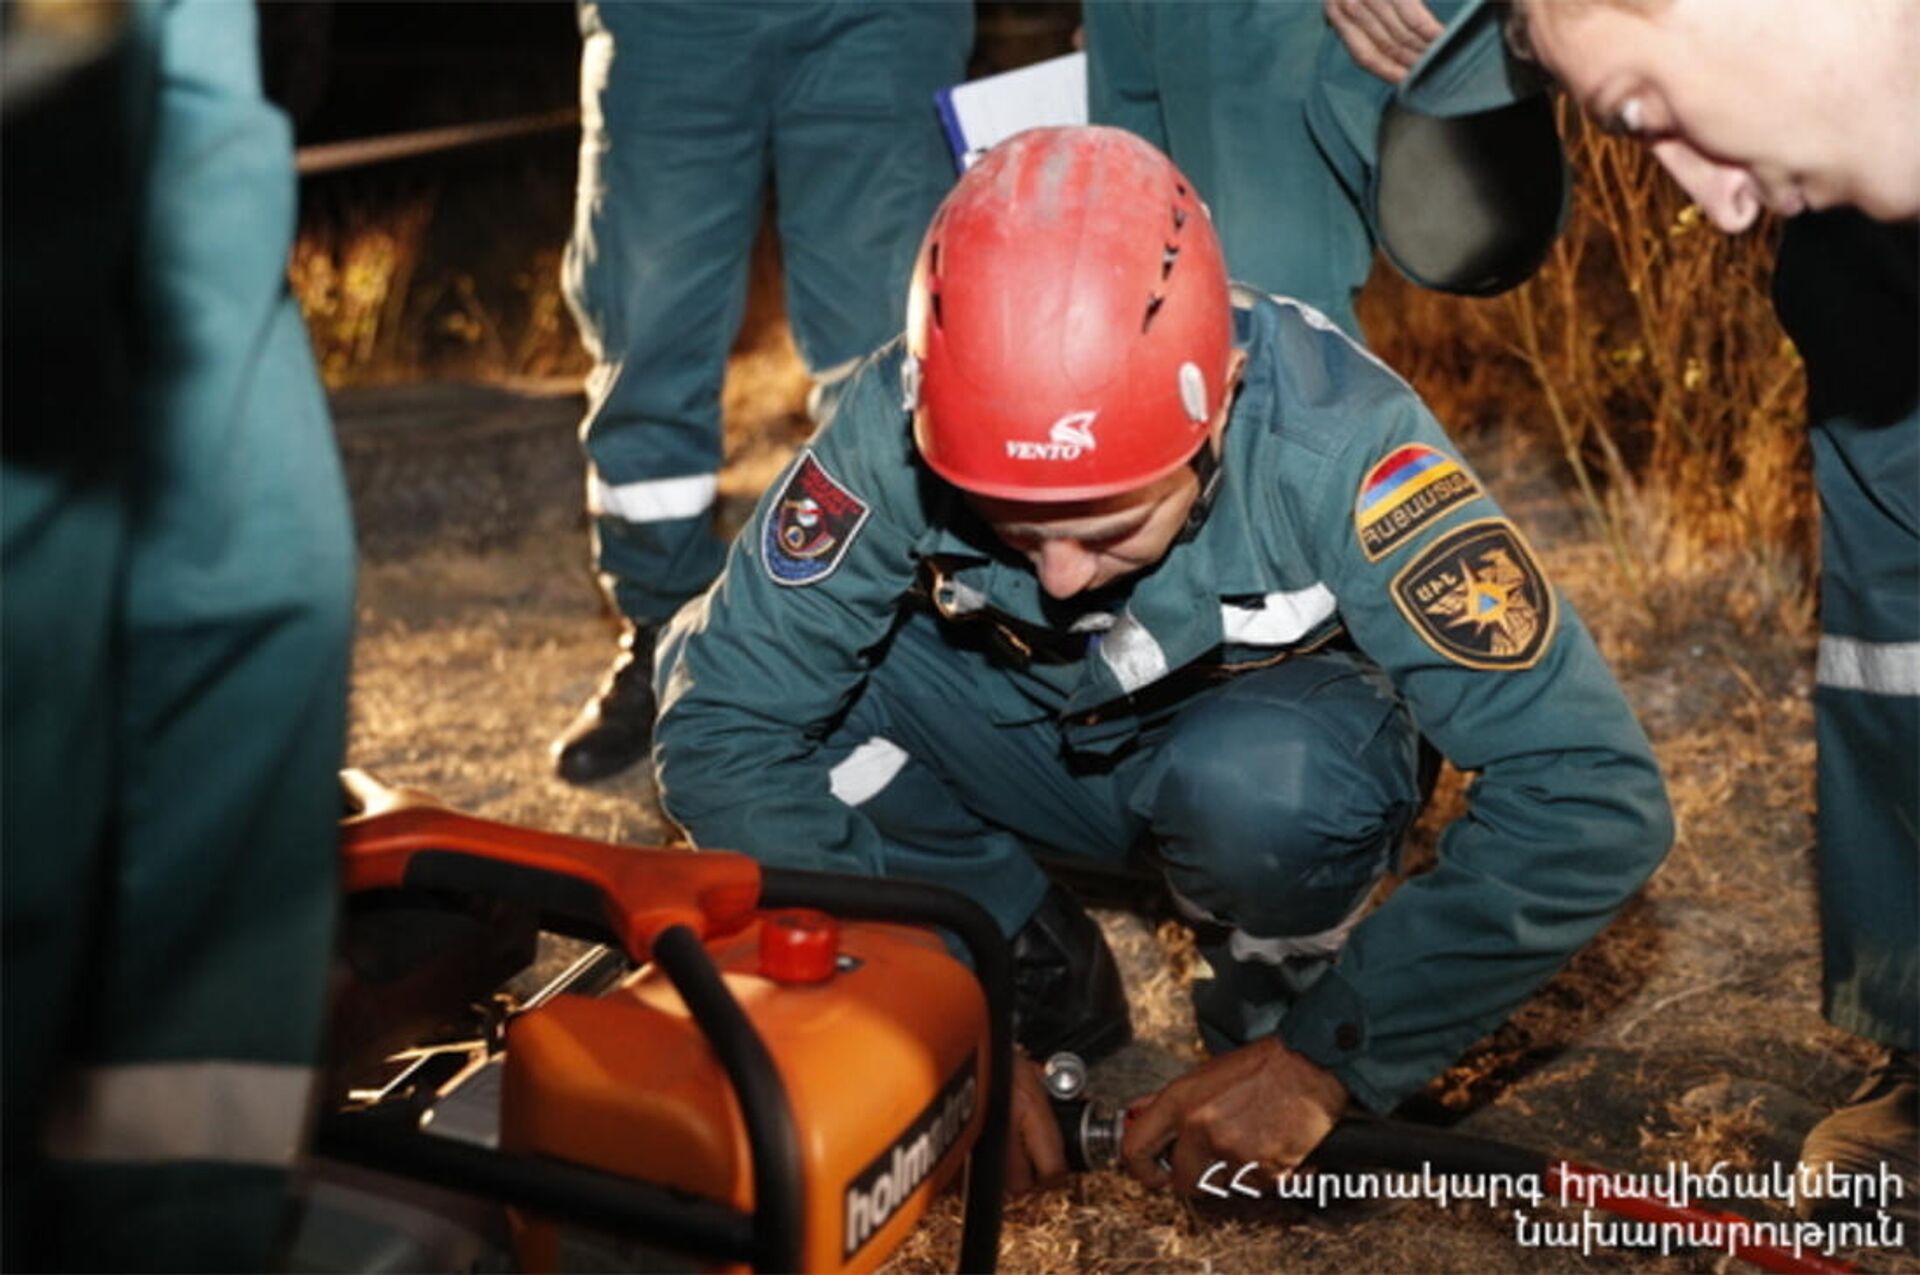 Спасатели пытаются спасти ребенка, оставшегося под завалами в районе Анках майла (11 октября 2021)/ Еревaн - Sputnik Армения, 1920, 11.10.2021